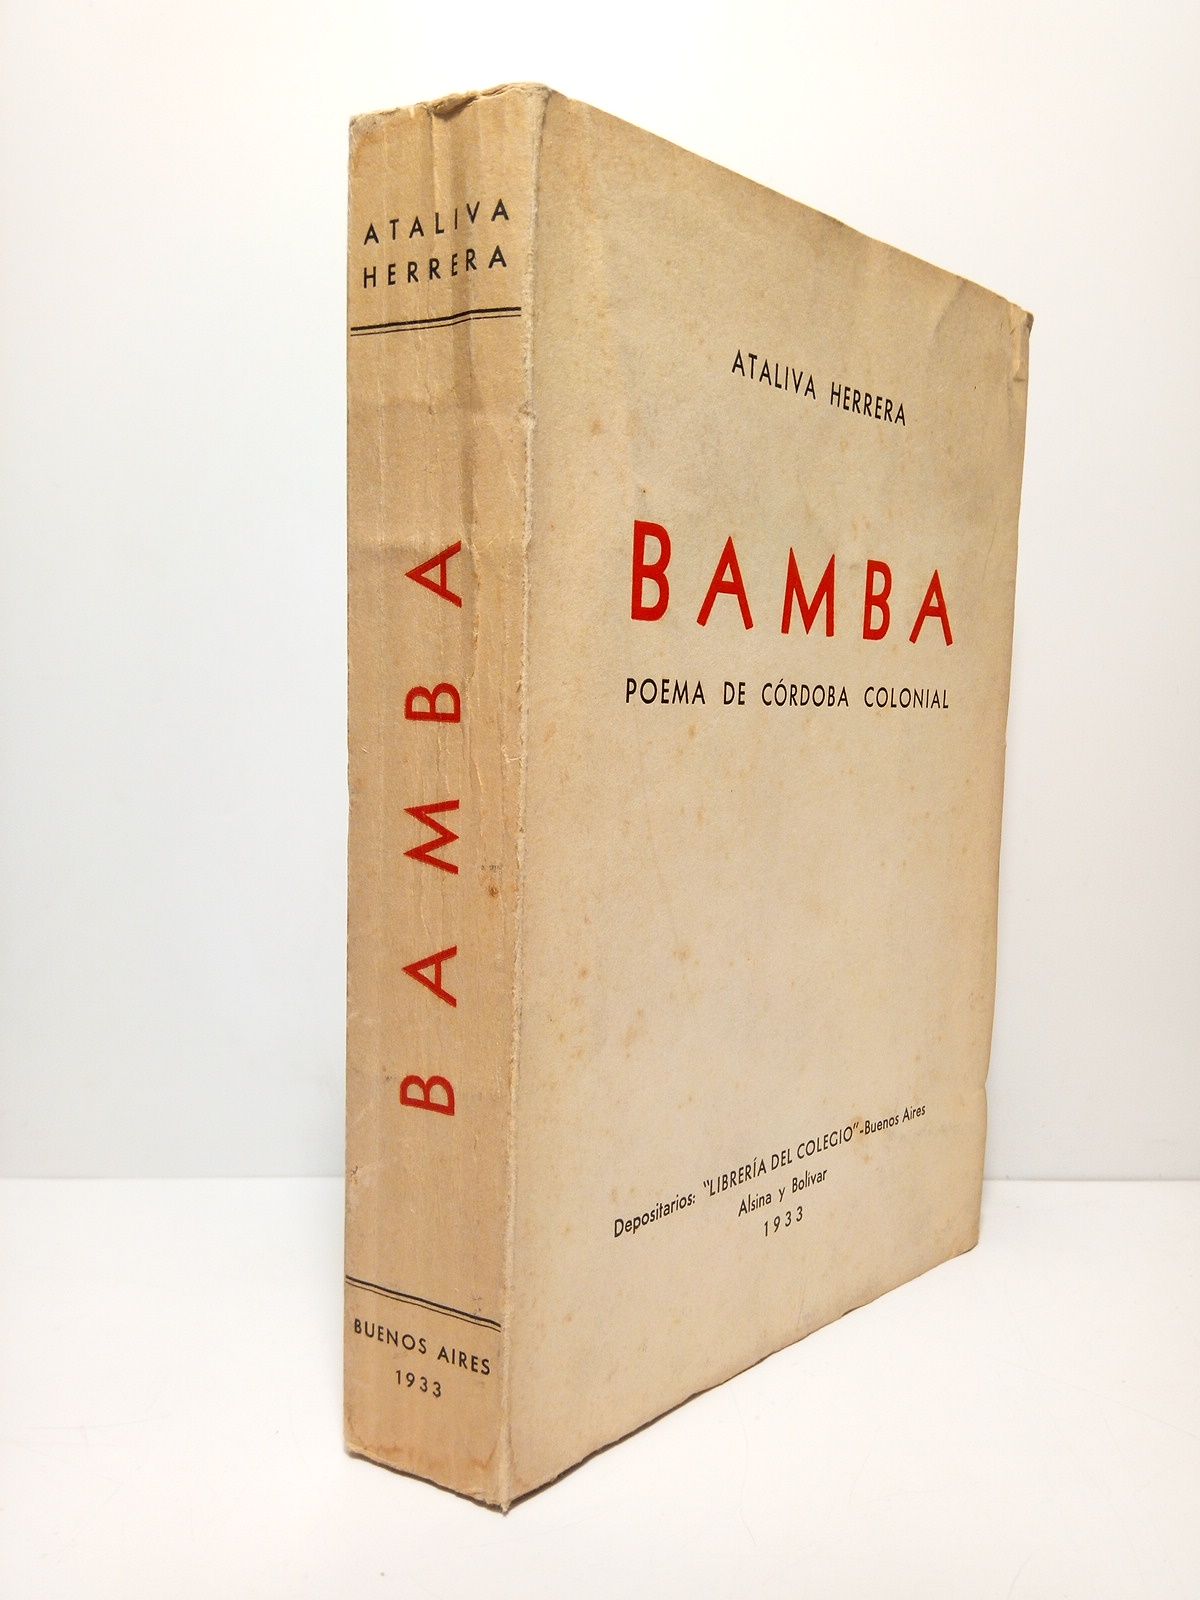 HERRERA, Ataliva - Bamba: Poema de Crdoba colonial